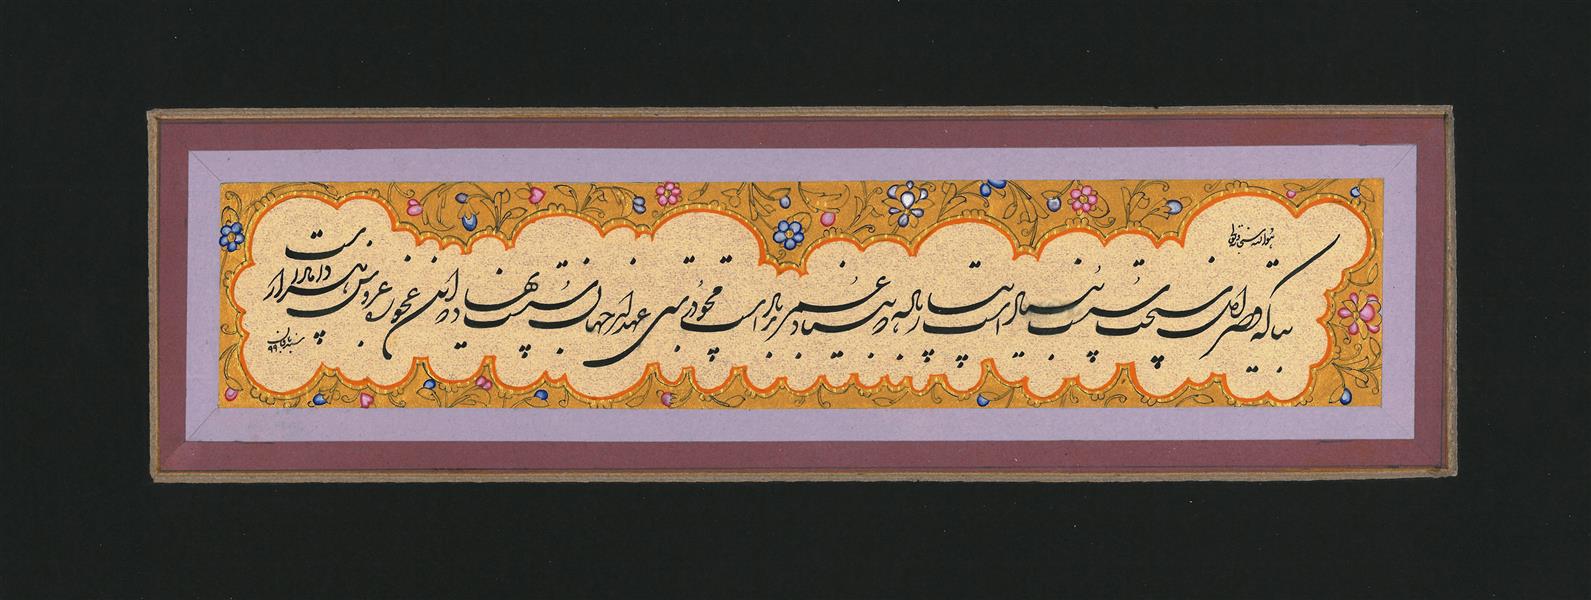 هنر خوشنویسی محفل خوشنویسی حمید سبدبافان #شکسته نستعلیق#حمید سبدبافان#۱۳۹۹#تابلو#نمایشگاه